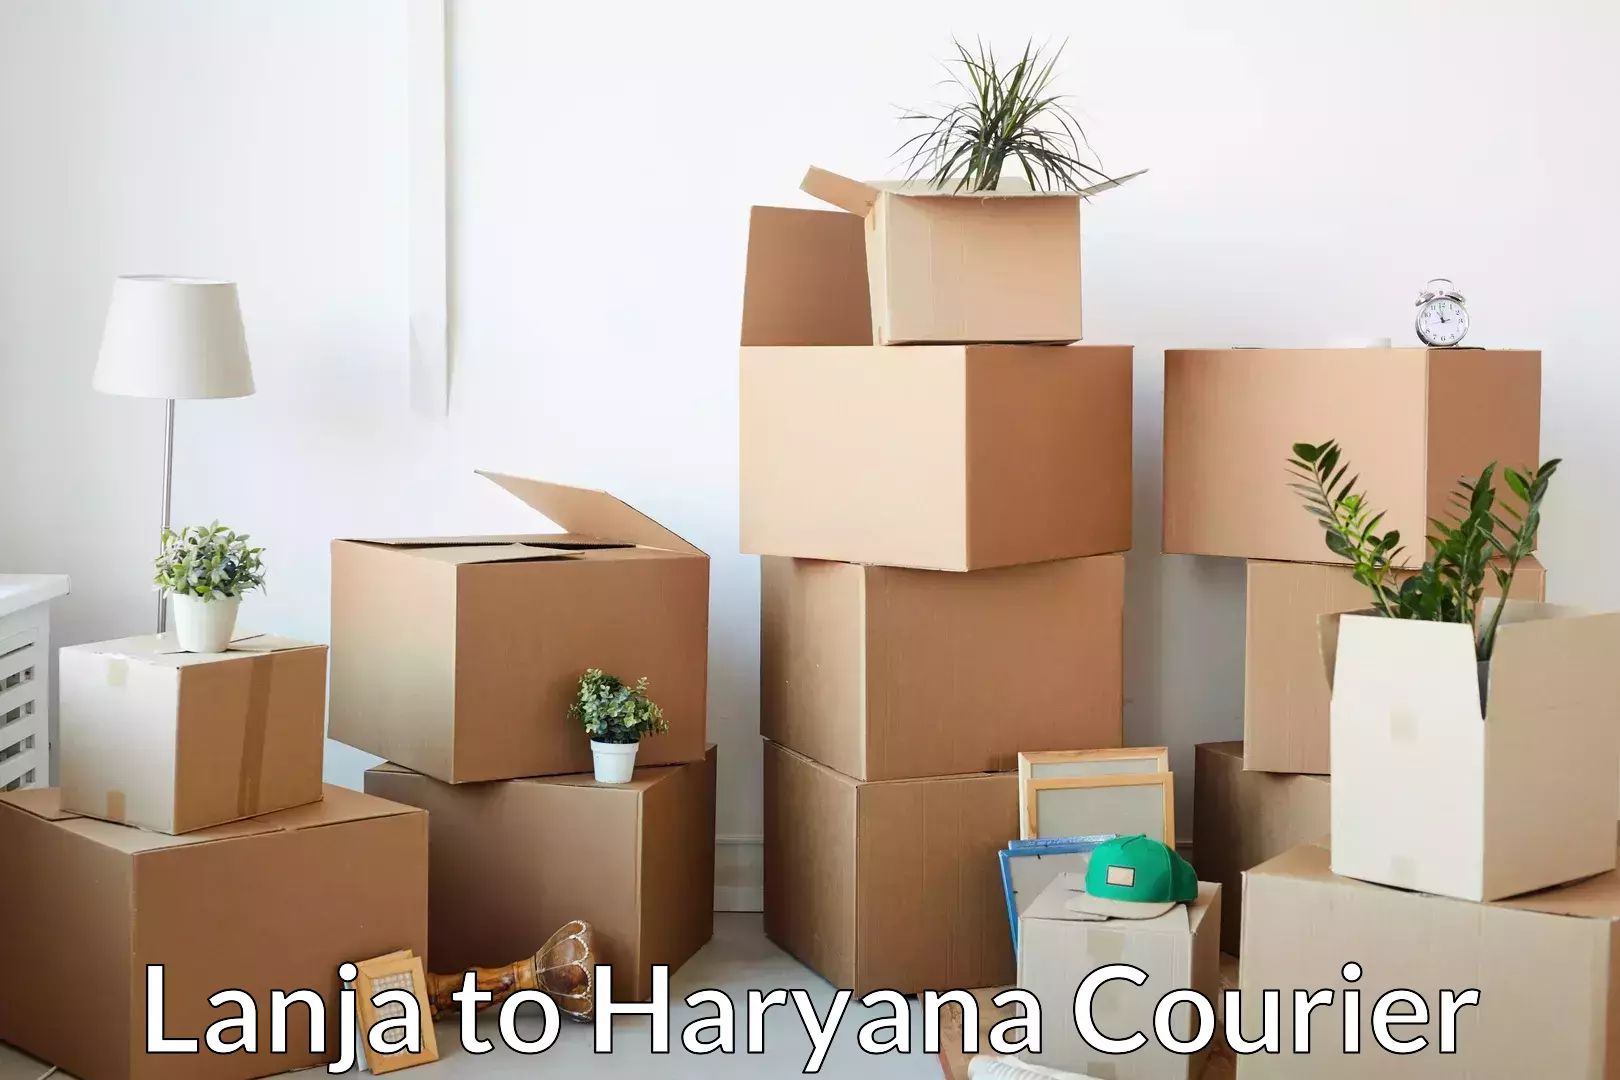 Furniture transport service Lanja to Haryana